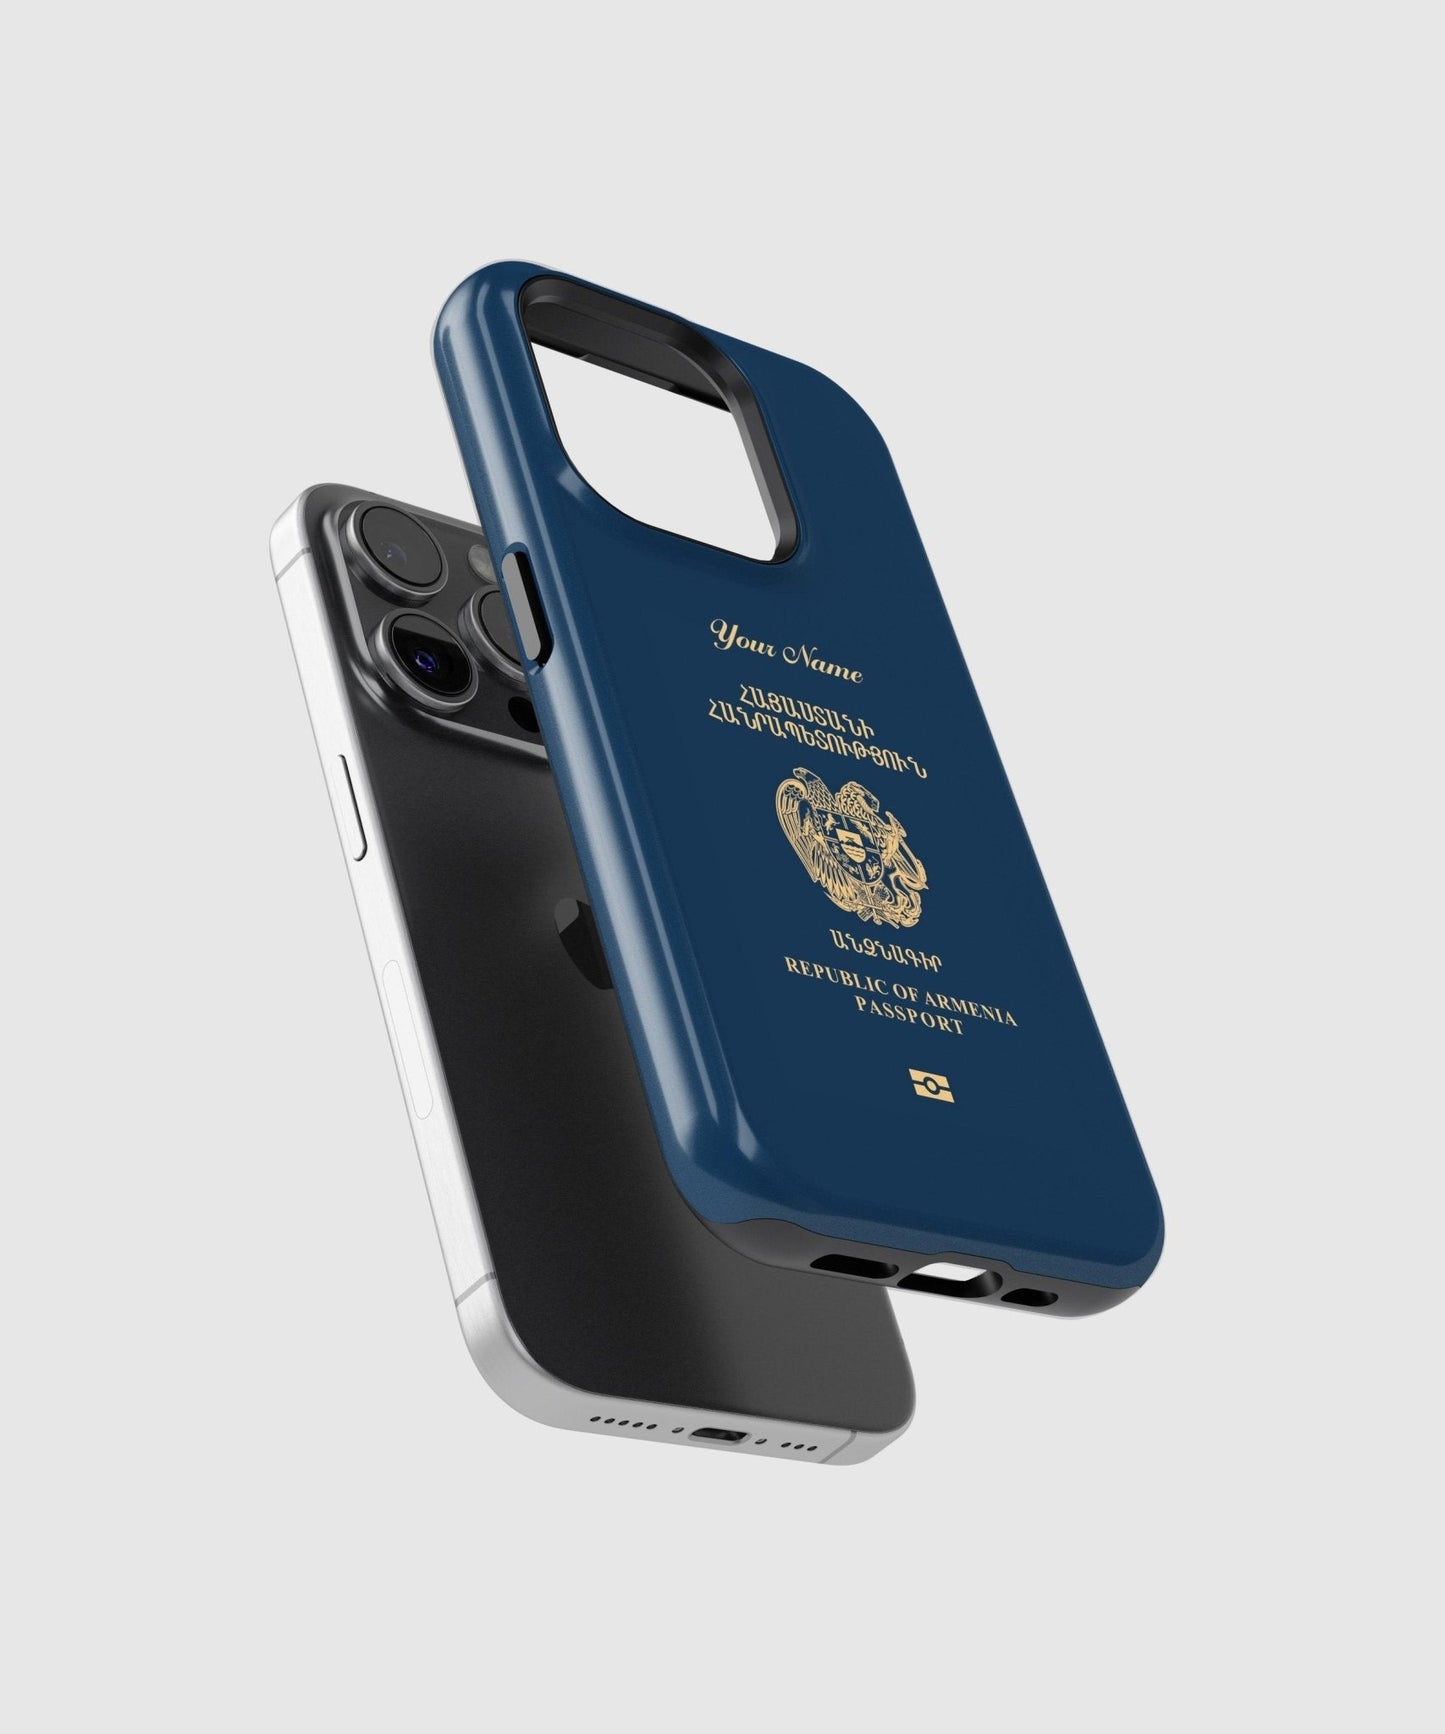 Armenia Passport - iPhone Case